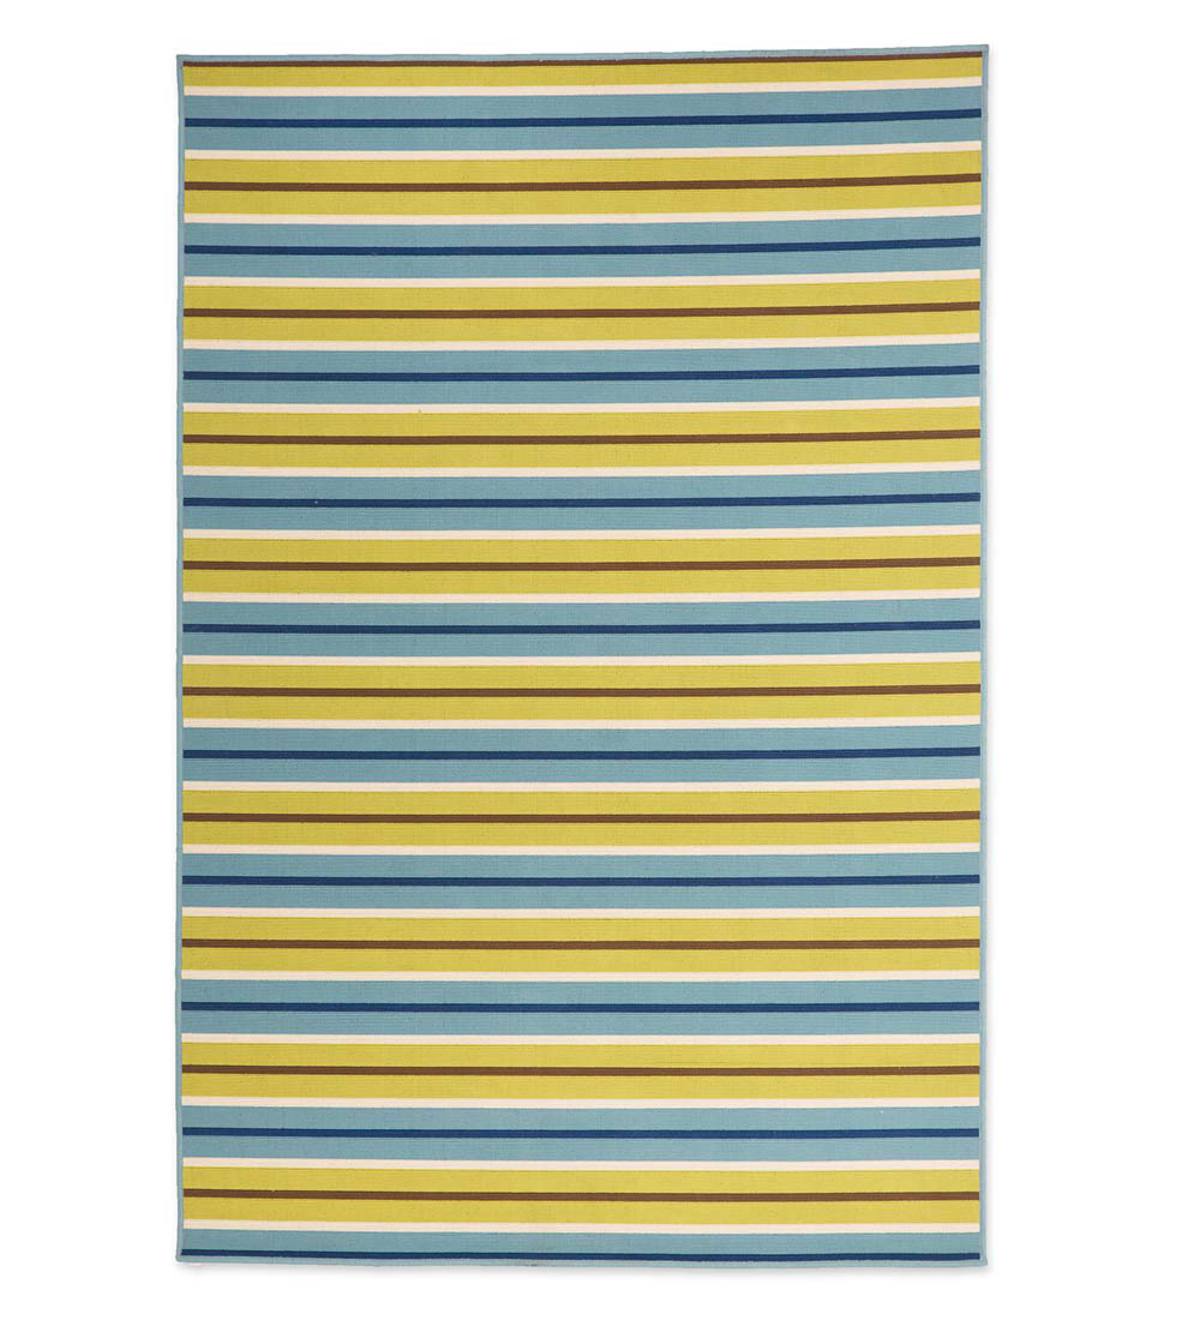 Surry Indoor/Outdoor Runner, Stripes, 2'3”x 7'6” - Green Stripe